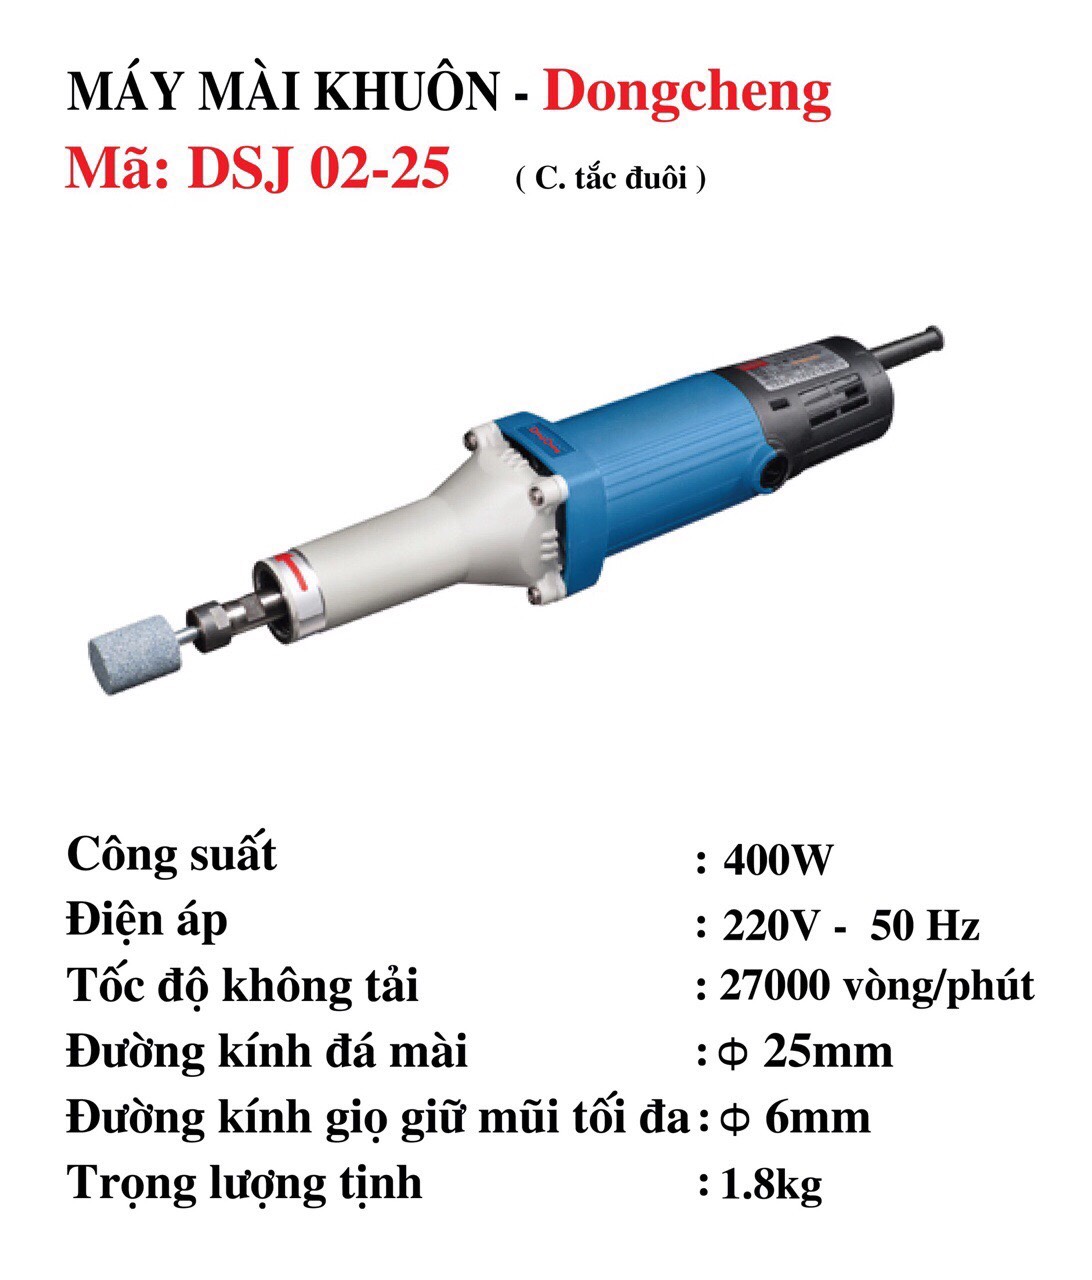 Máy mài khuôn DongCheng DSJ02-25, 6mm